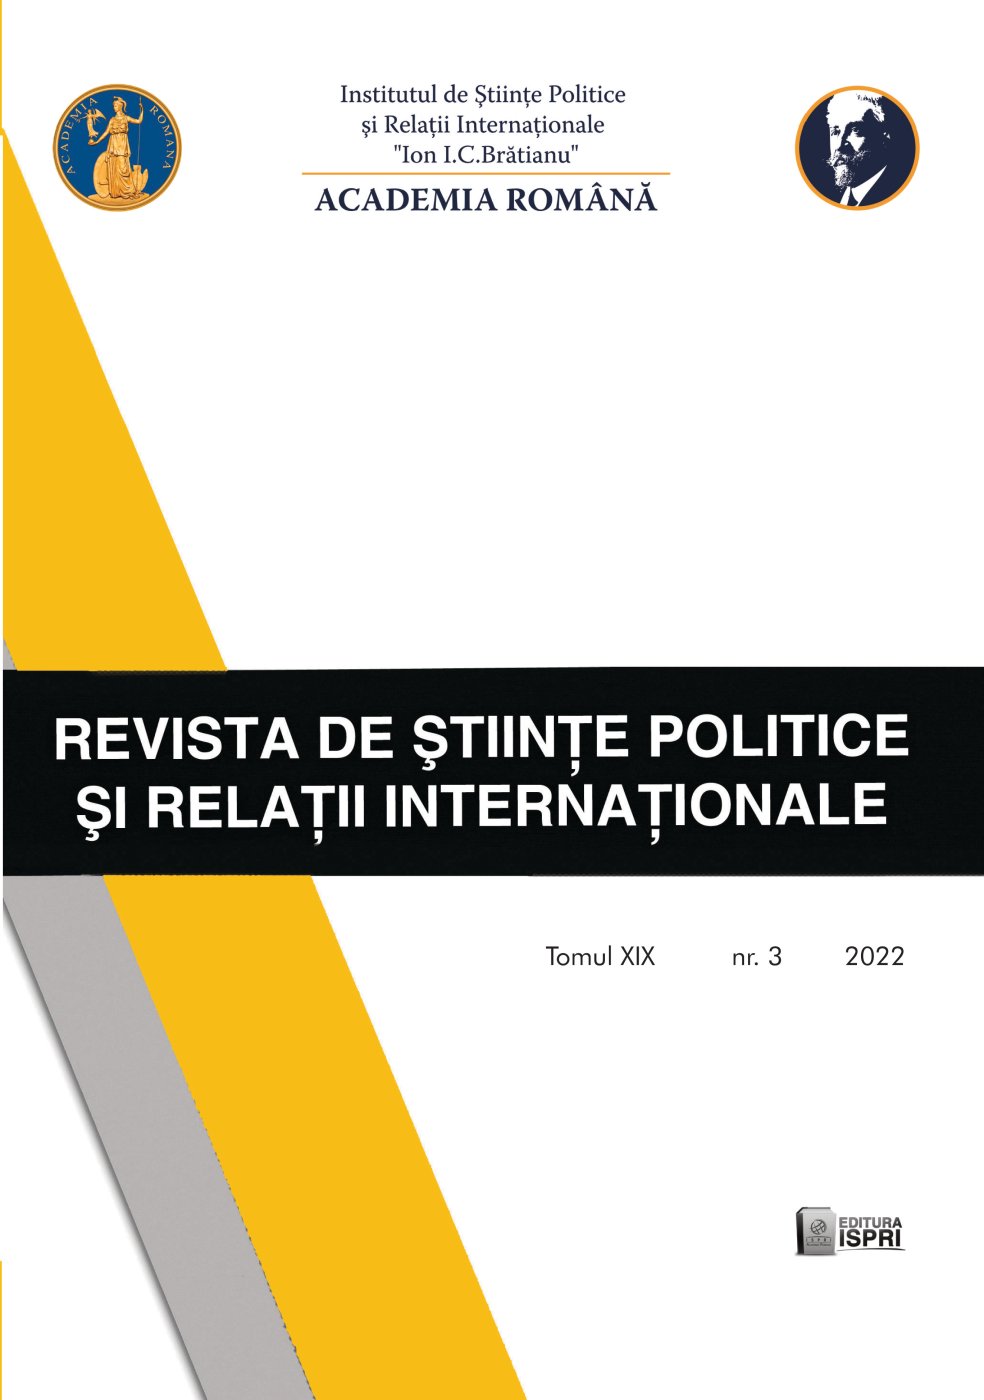 REPERE ALE COOPERĂRII ROMÂNO-CHINEZE ÎN A DOUA JUMĂTATE A SEC. XX: RELAȚIILE POLITICO-DIPLOMATICE